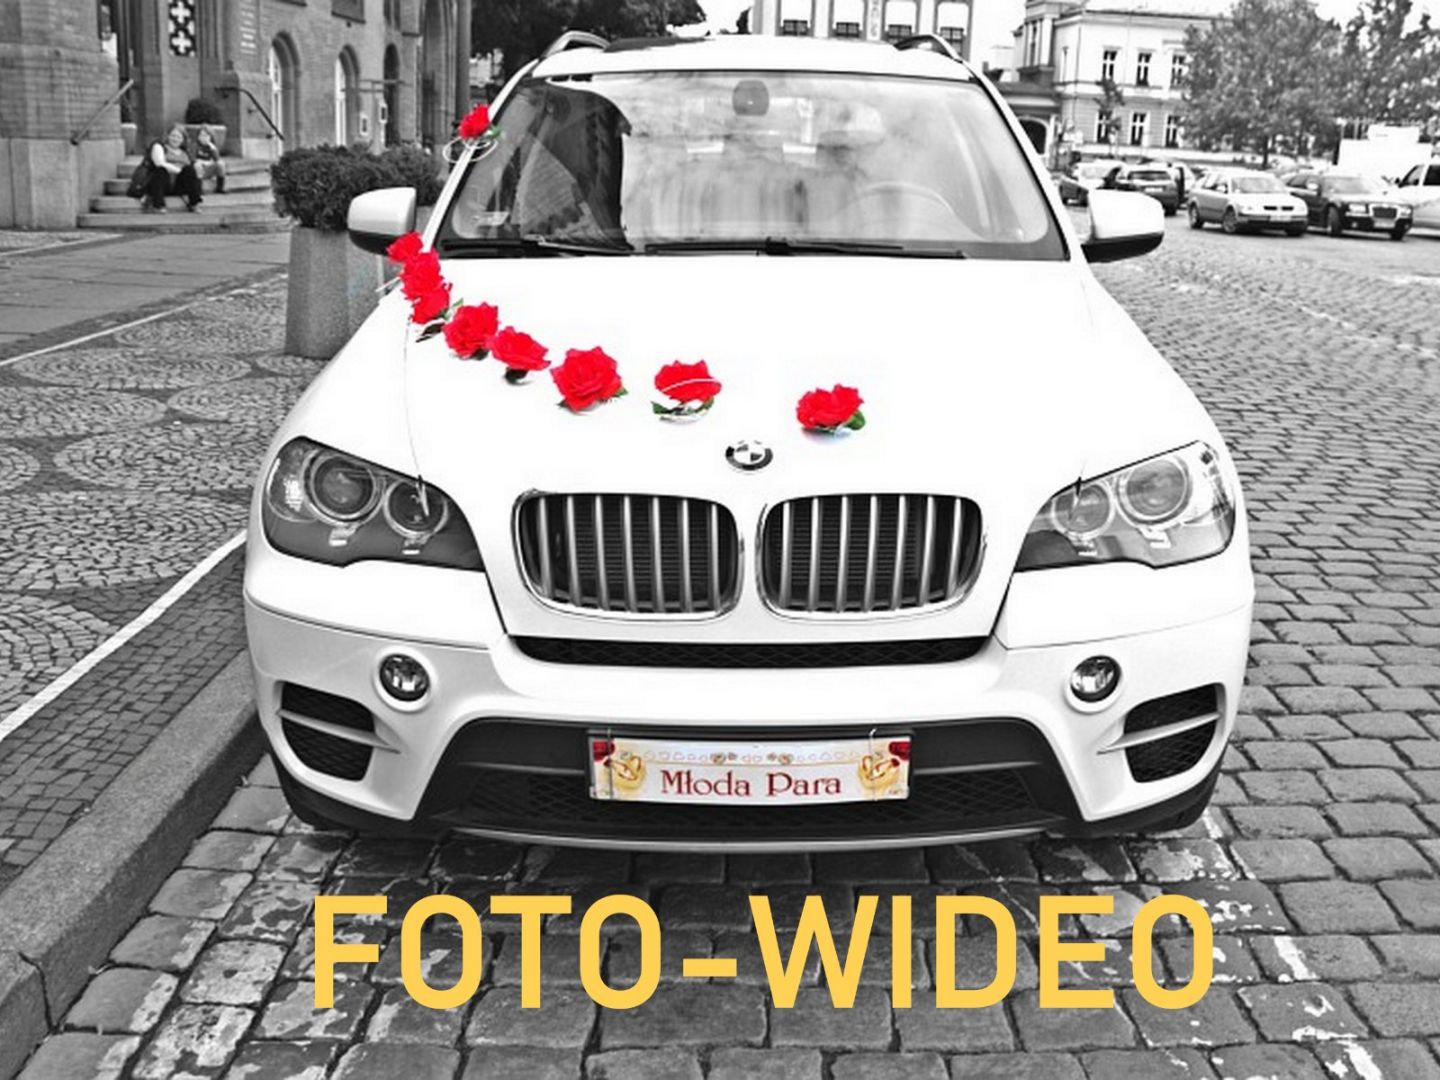 Fotografia ślubna i wideofilmowanie wesel Katowice - Zdjęcie 1